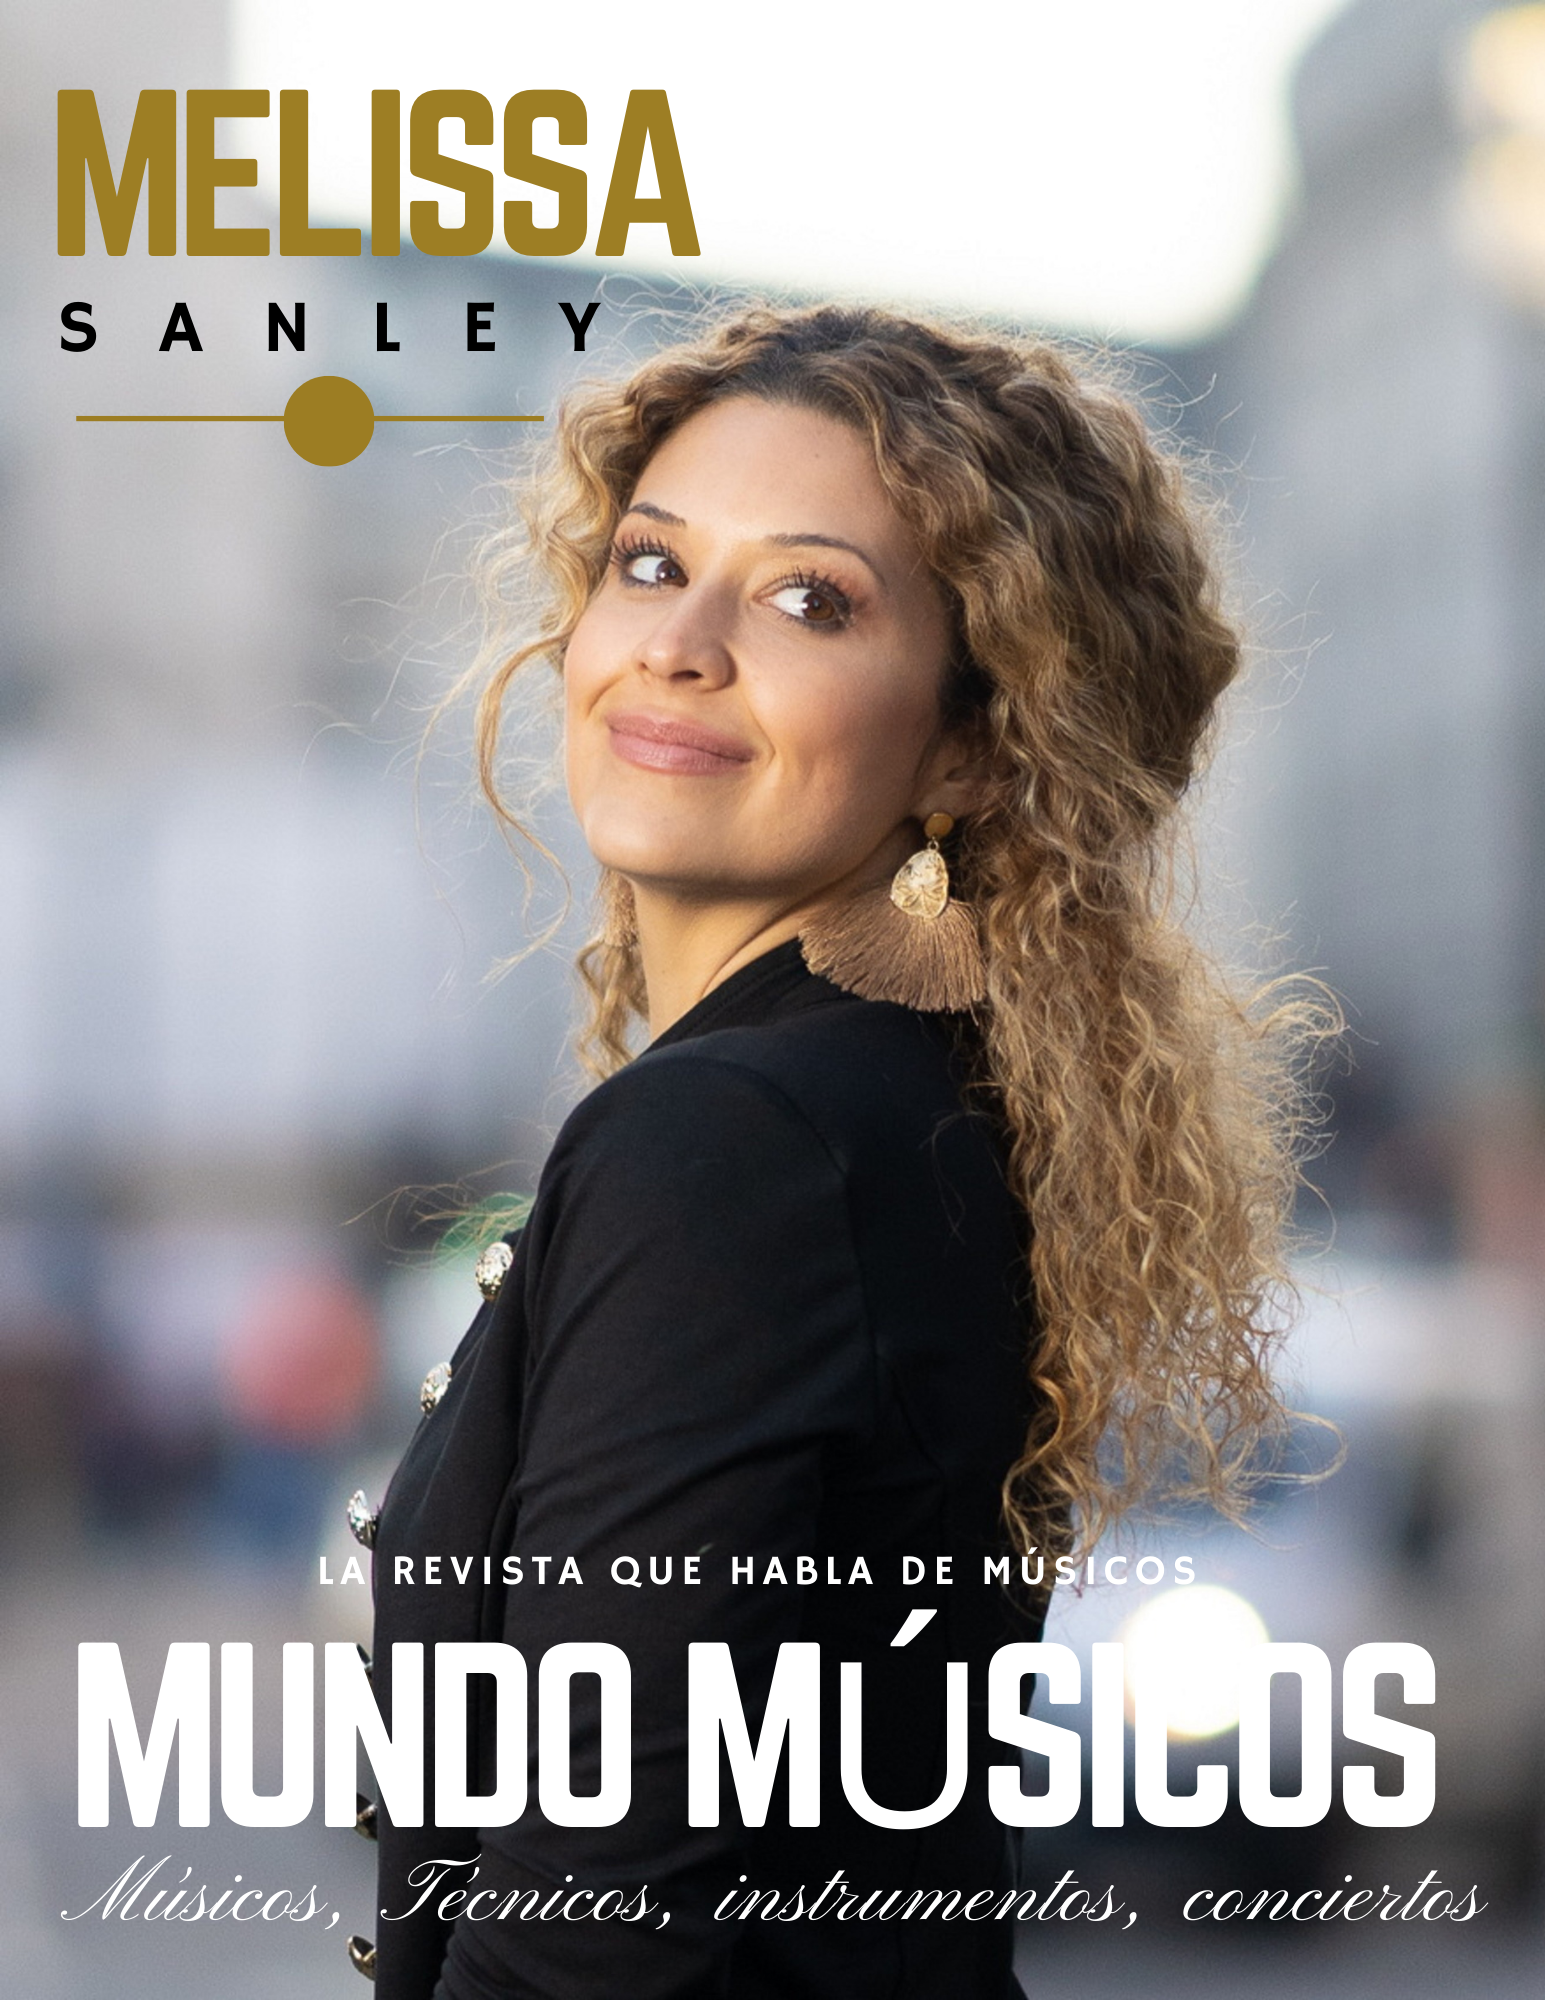 Melissa Sanley, Cantante y compositora «La música nos une, nos impacta, tiene efectos curativos, en definitiva, es la mejor medicina». 